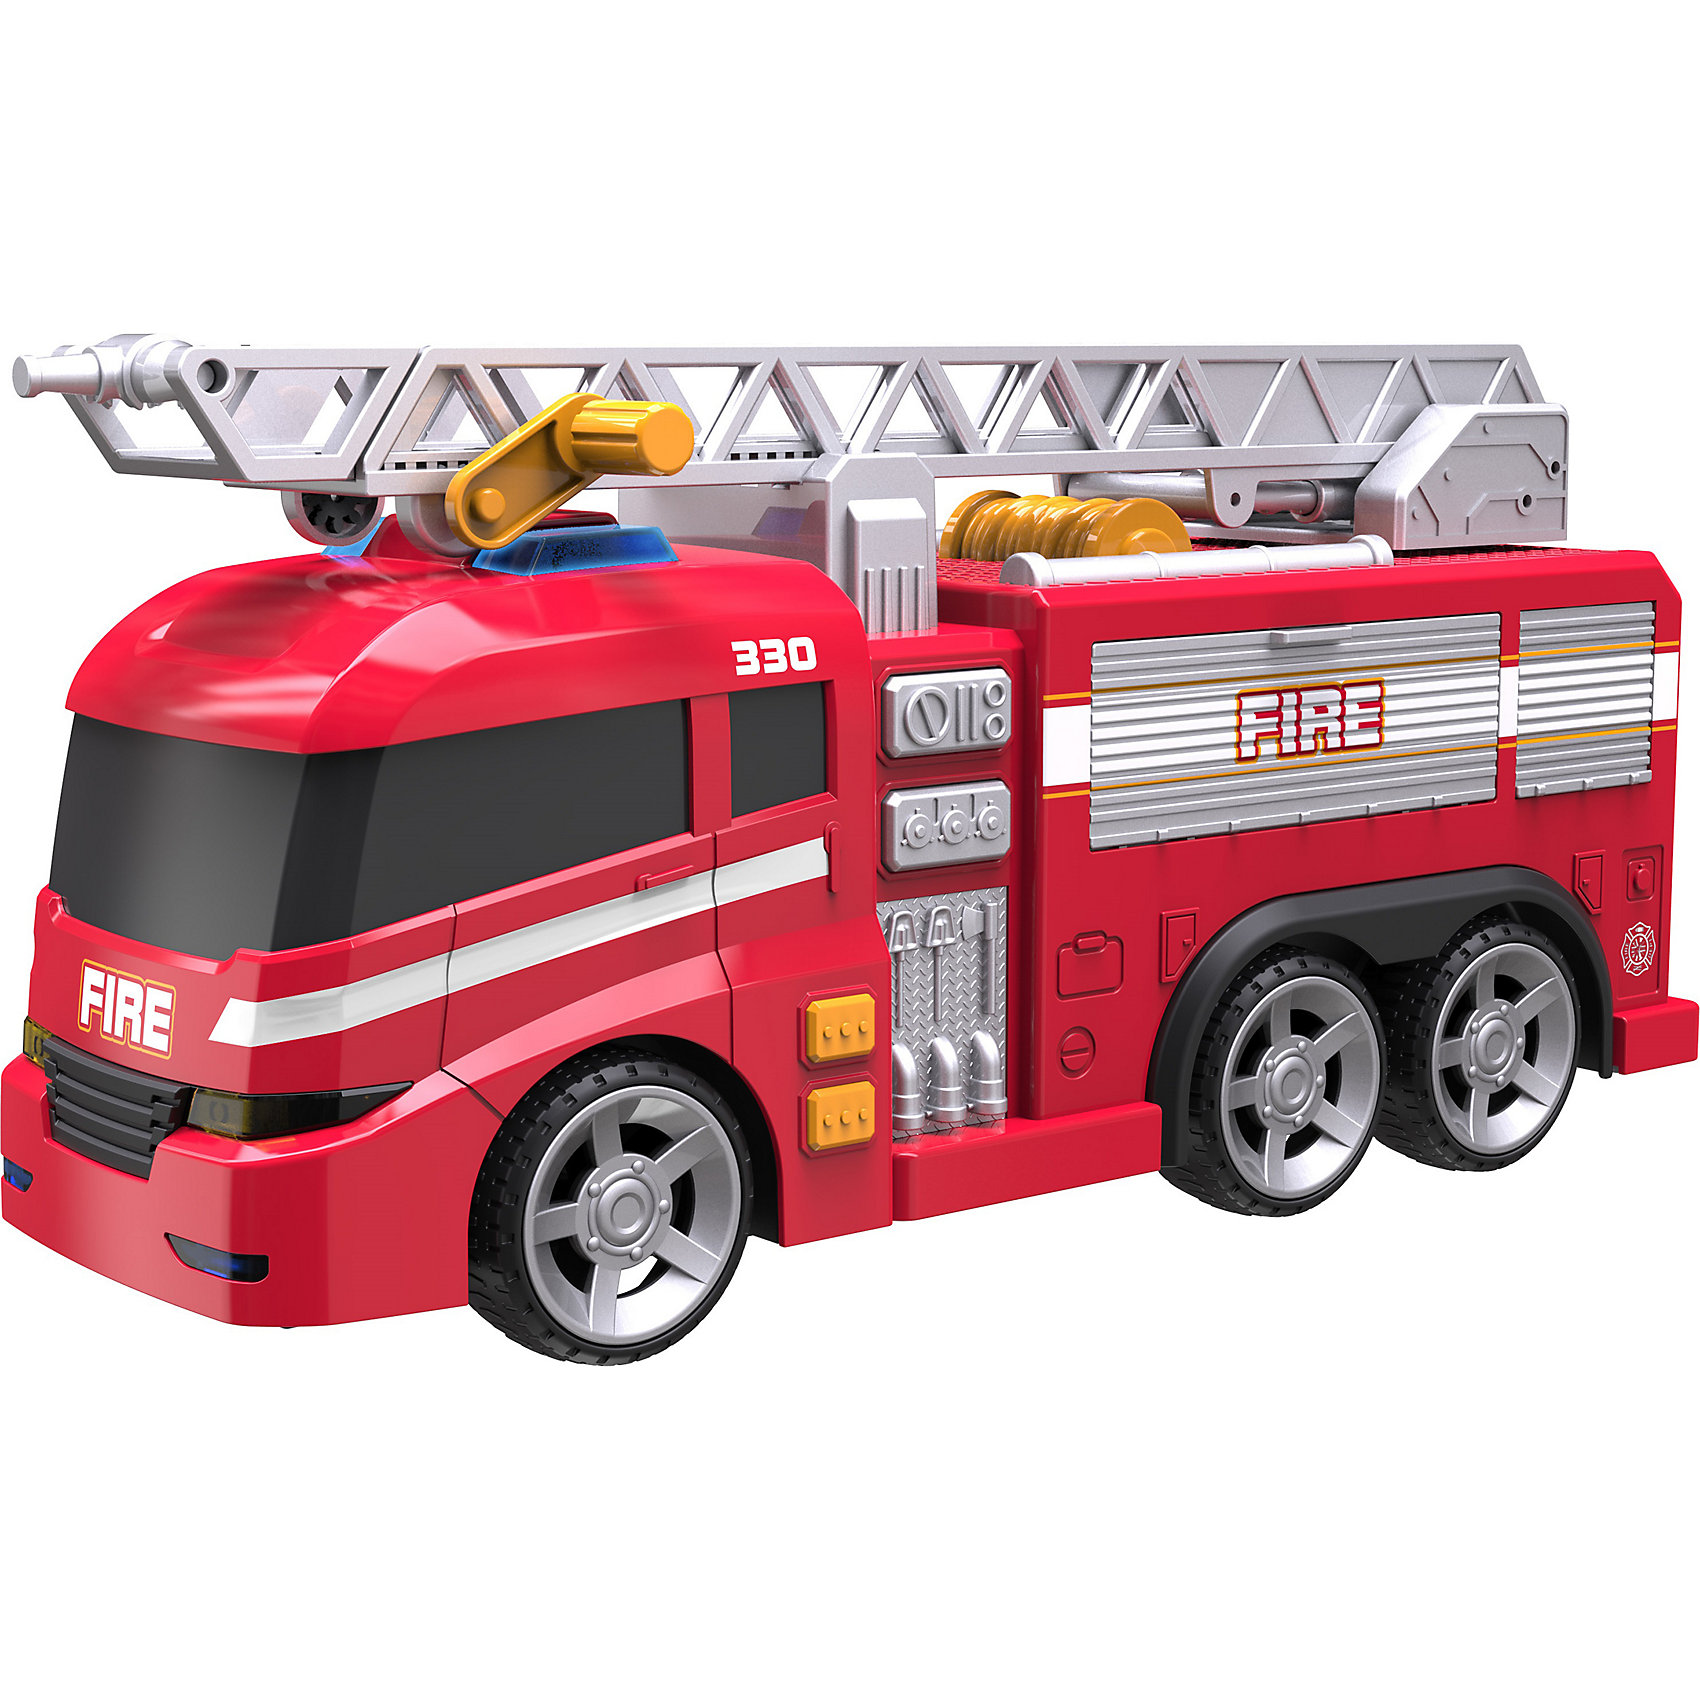 Пожарная машинка Roadsterz, 37 см HTI 15654354